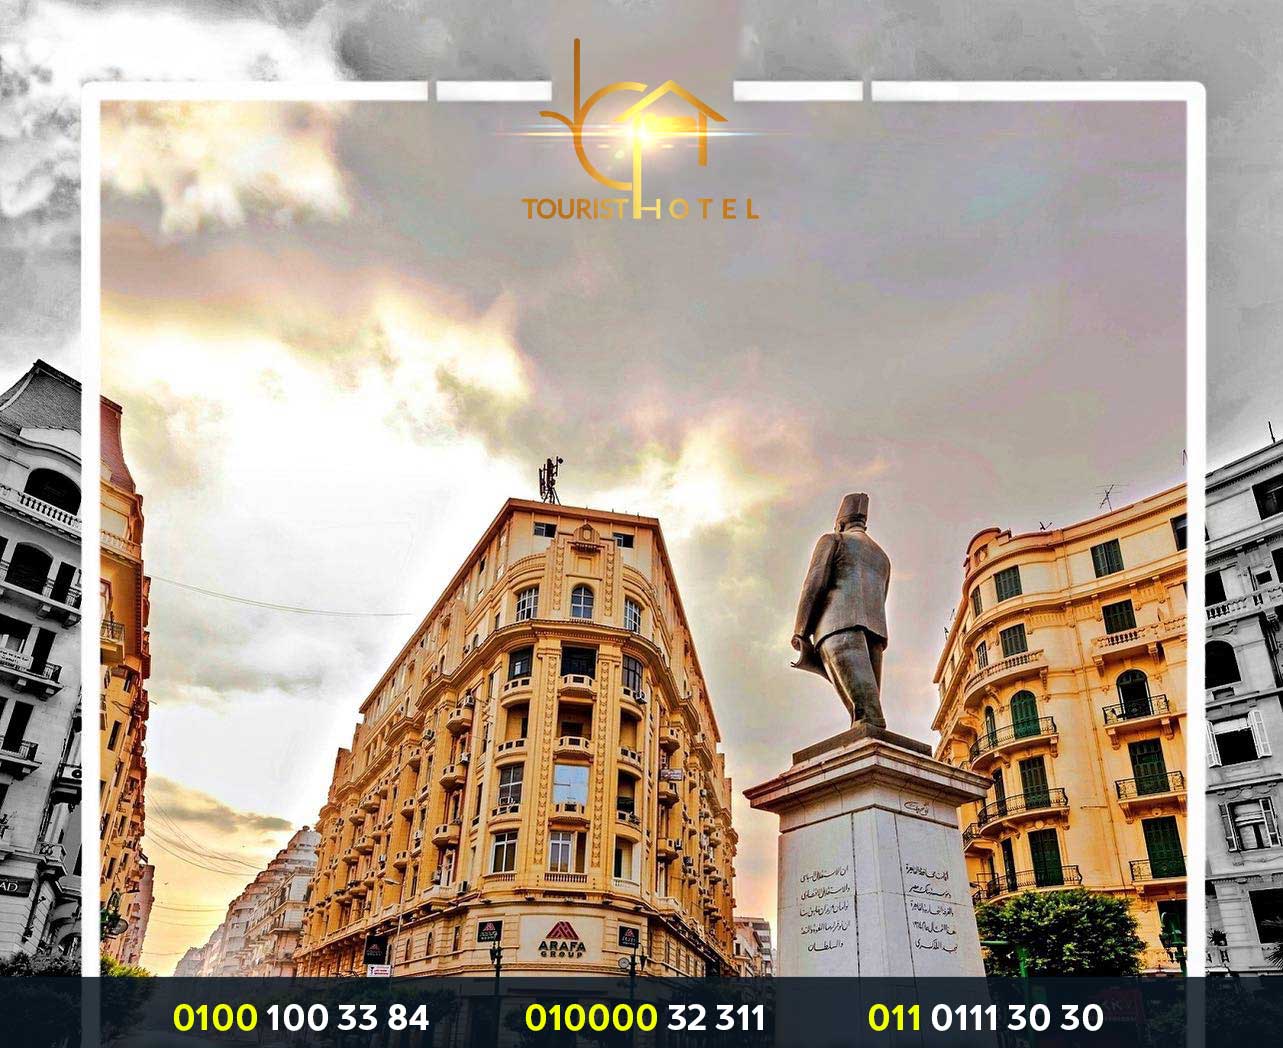 فنادق وسط البلد - فنادق القاهرة وسط البلد 